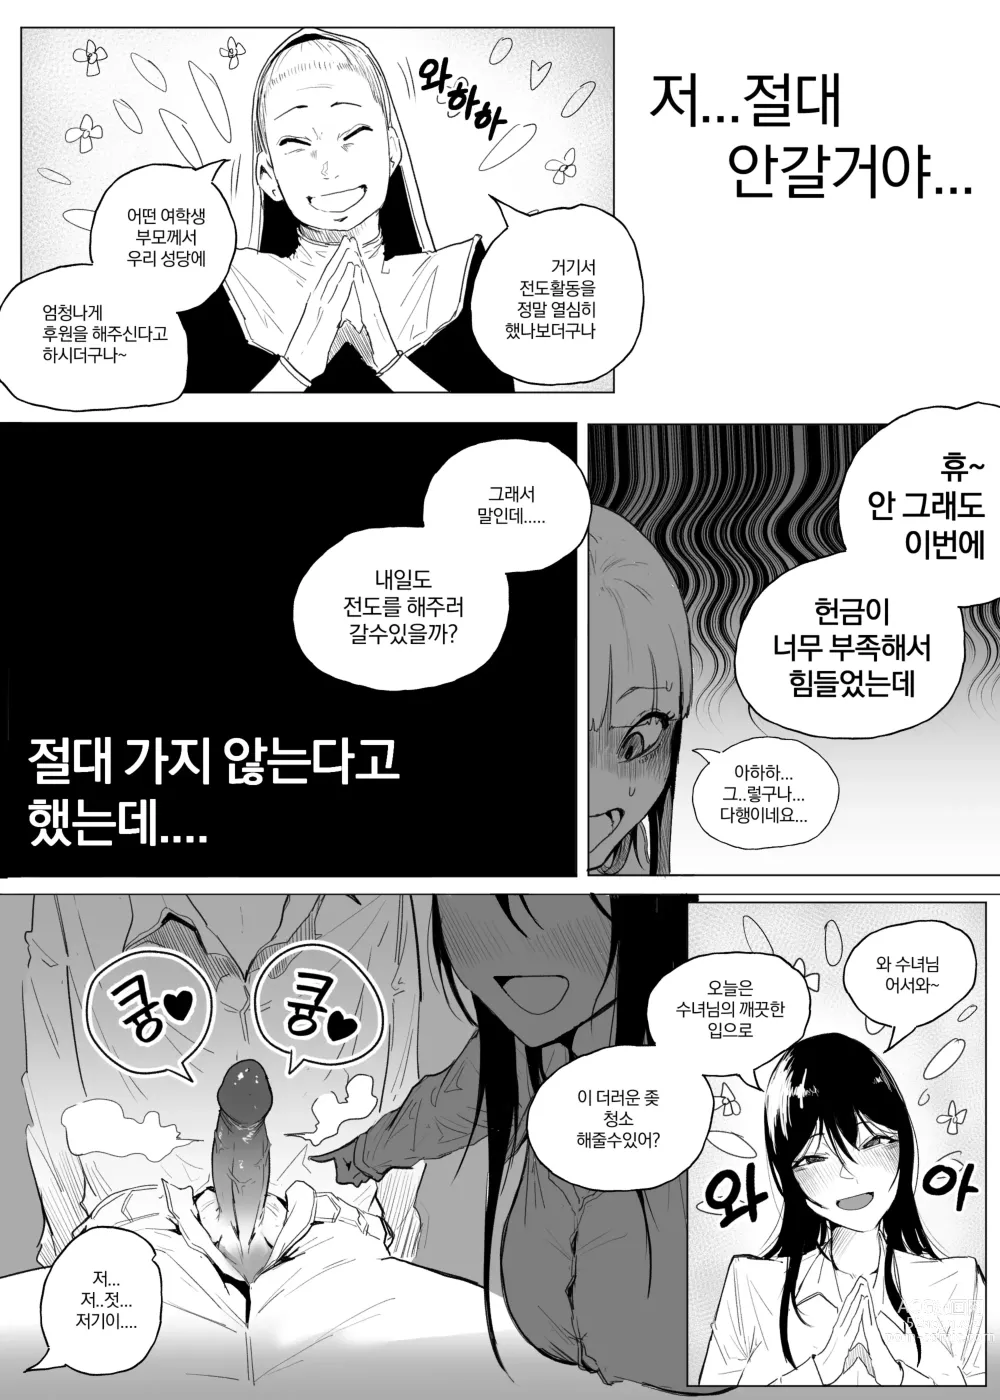 Page 14 of doujinshi 왕따 + 일진 + 교육